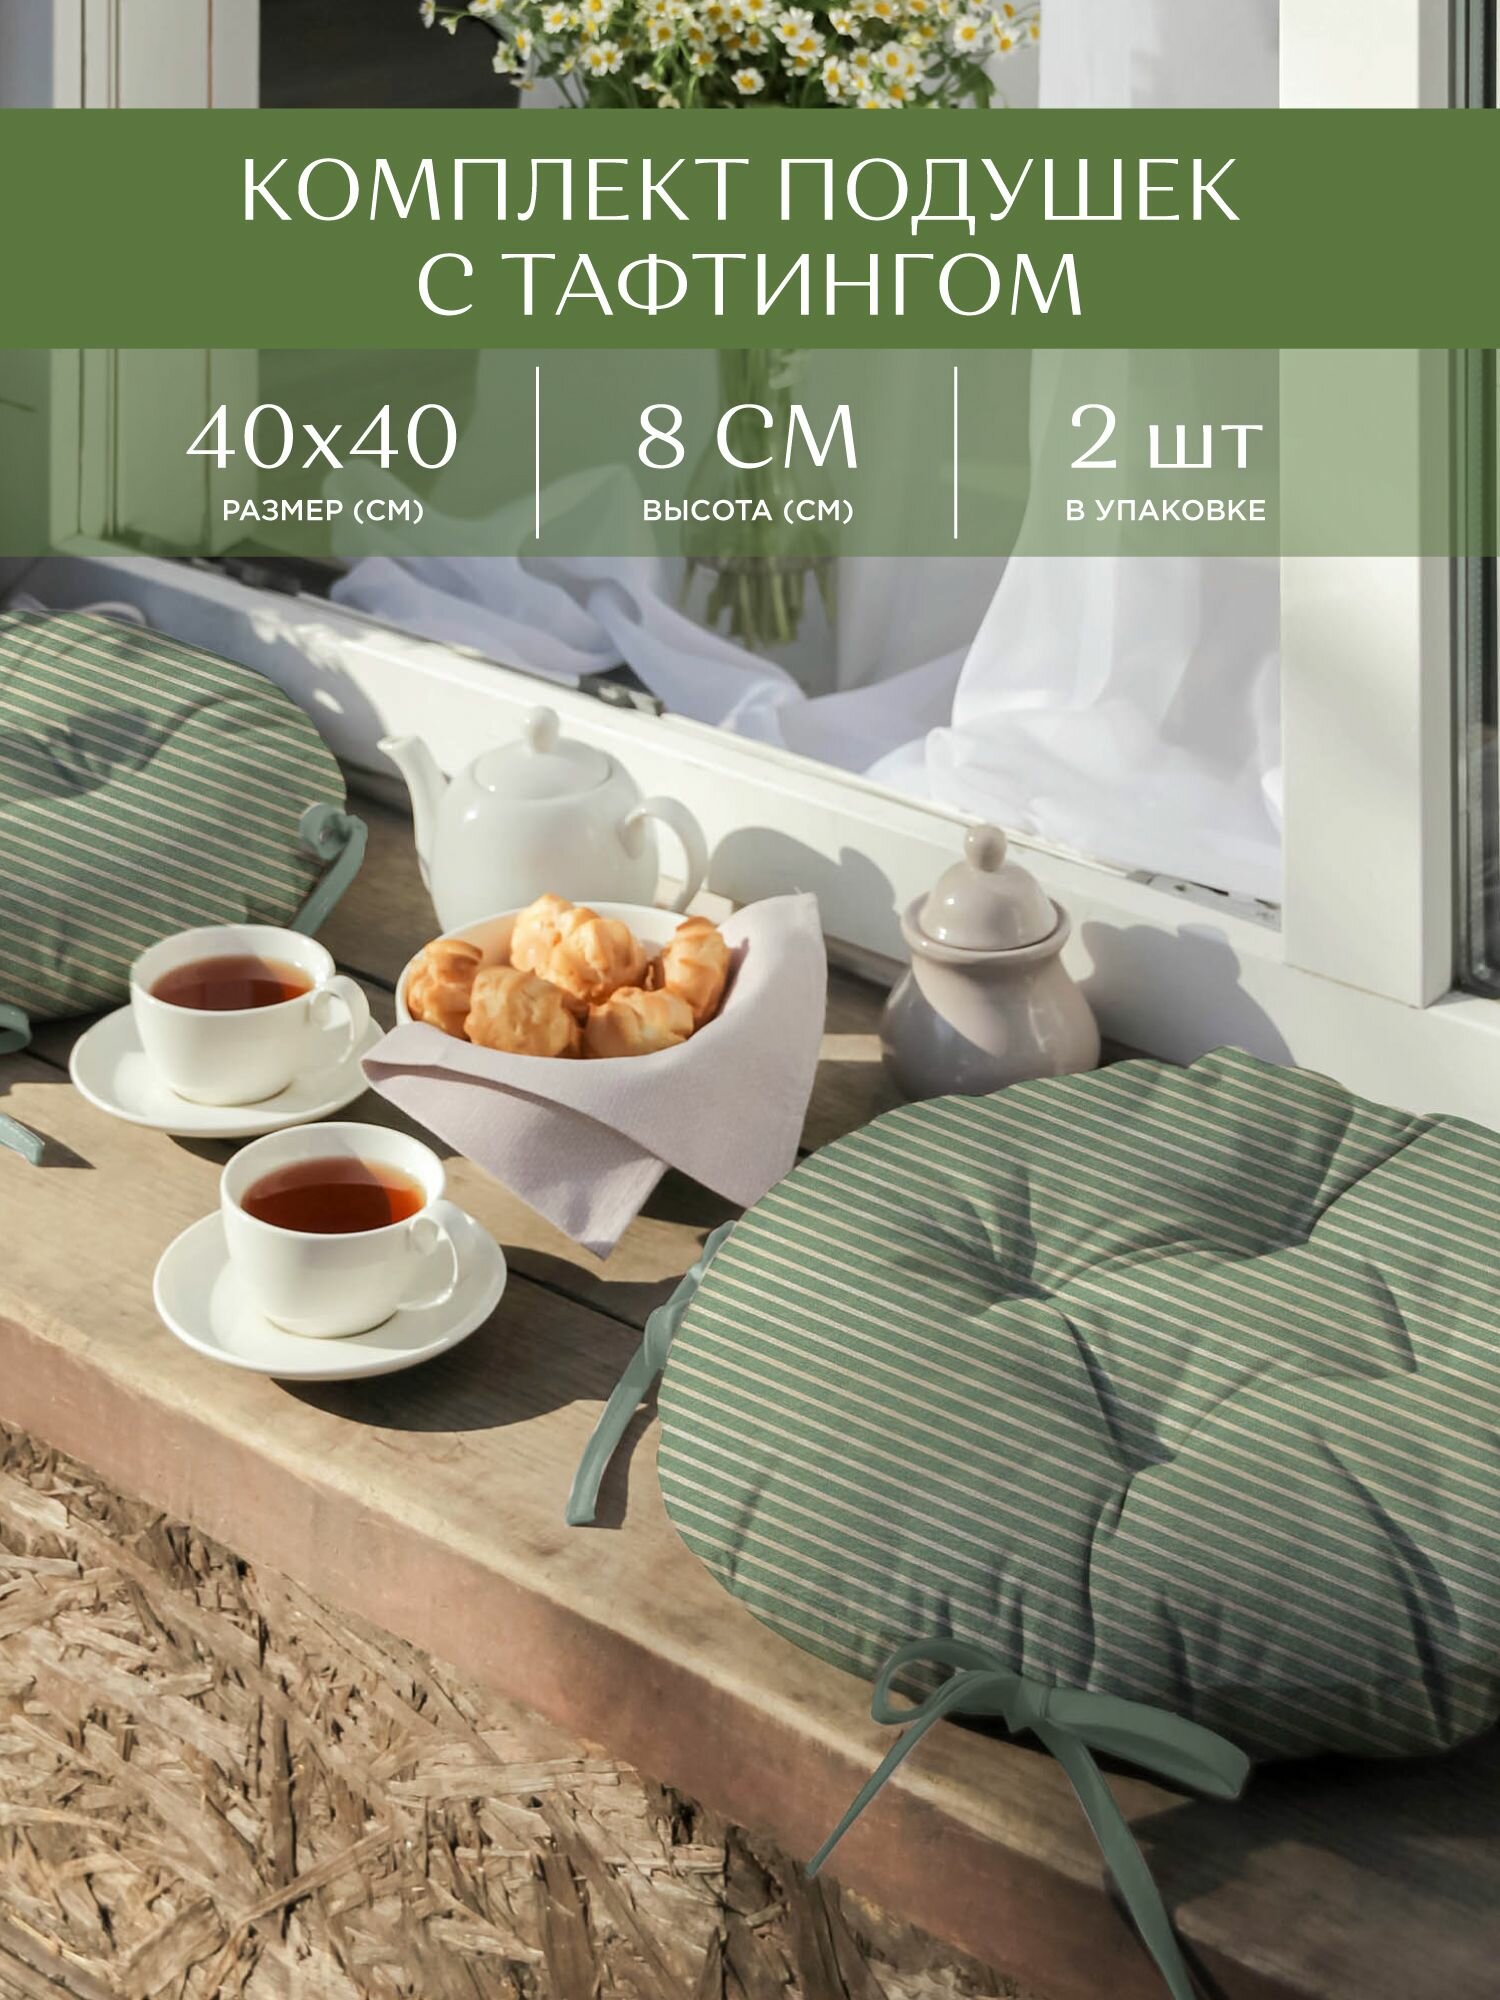 Комплект подушек на стул с тафтингом круглых d40 (2 шт.) "Унисон" рис 33068-9 Loft Cafe